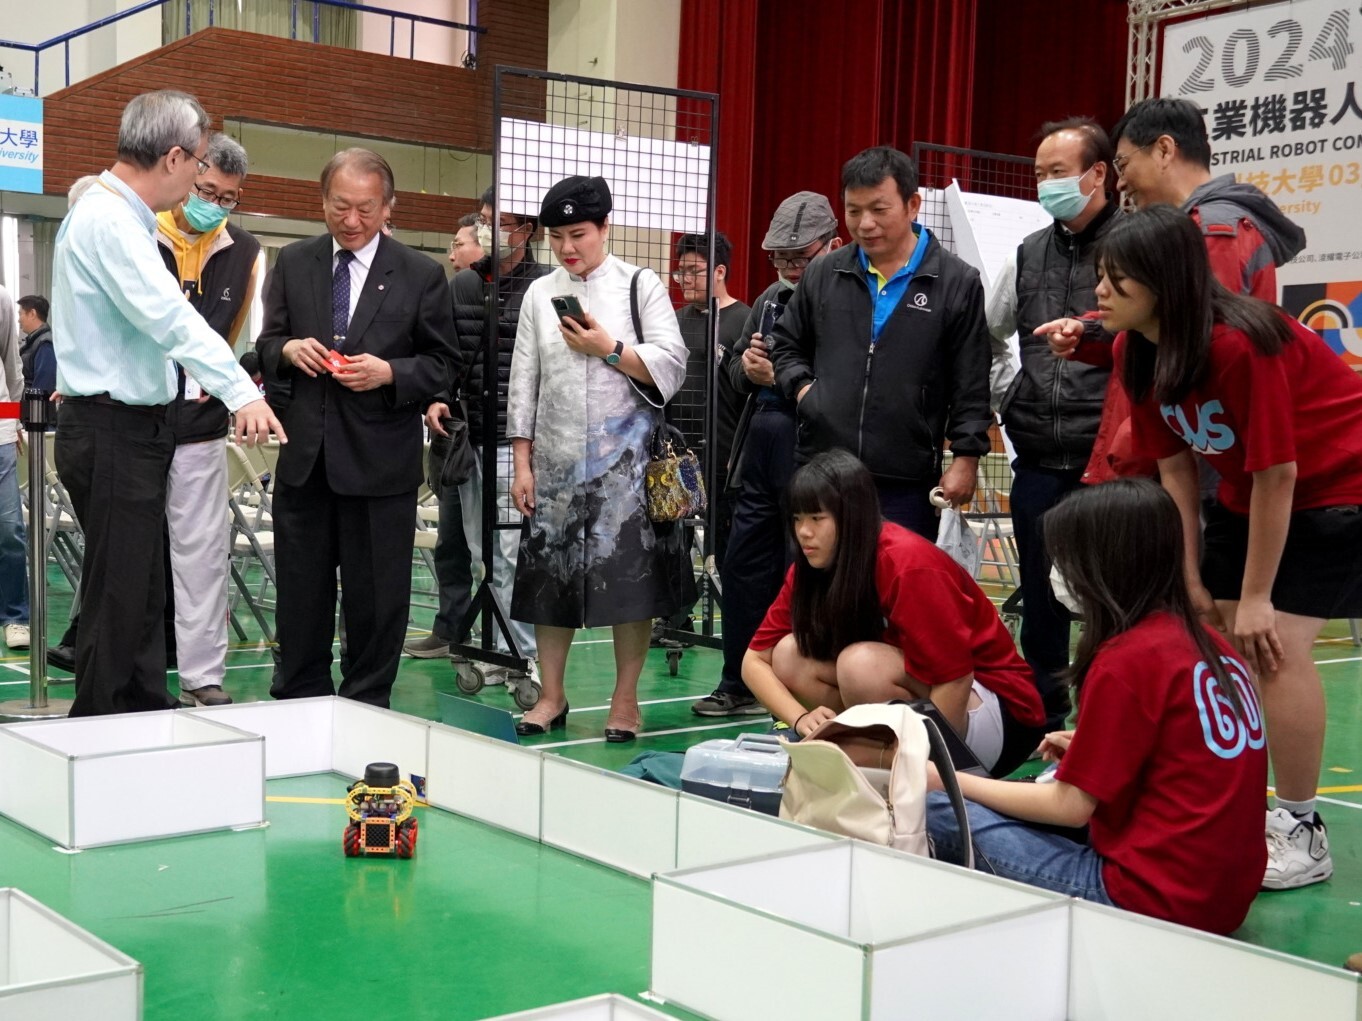 正修2024工業機器人競賽 紮根機器人教育 培養業界人才